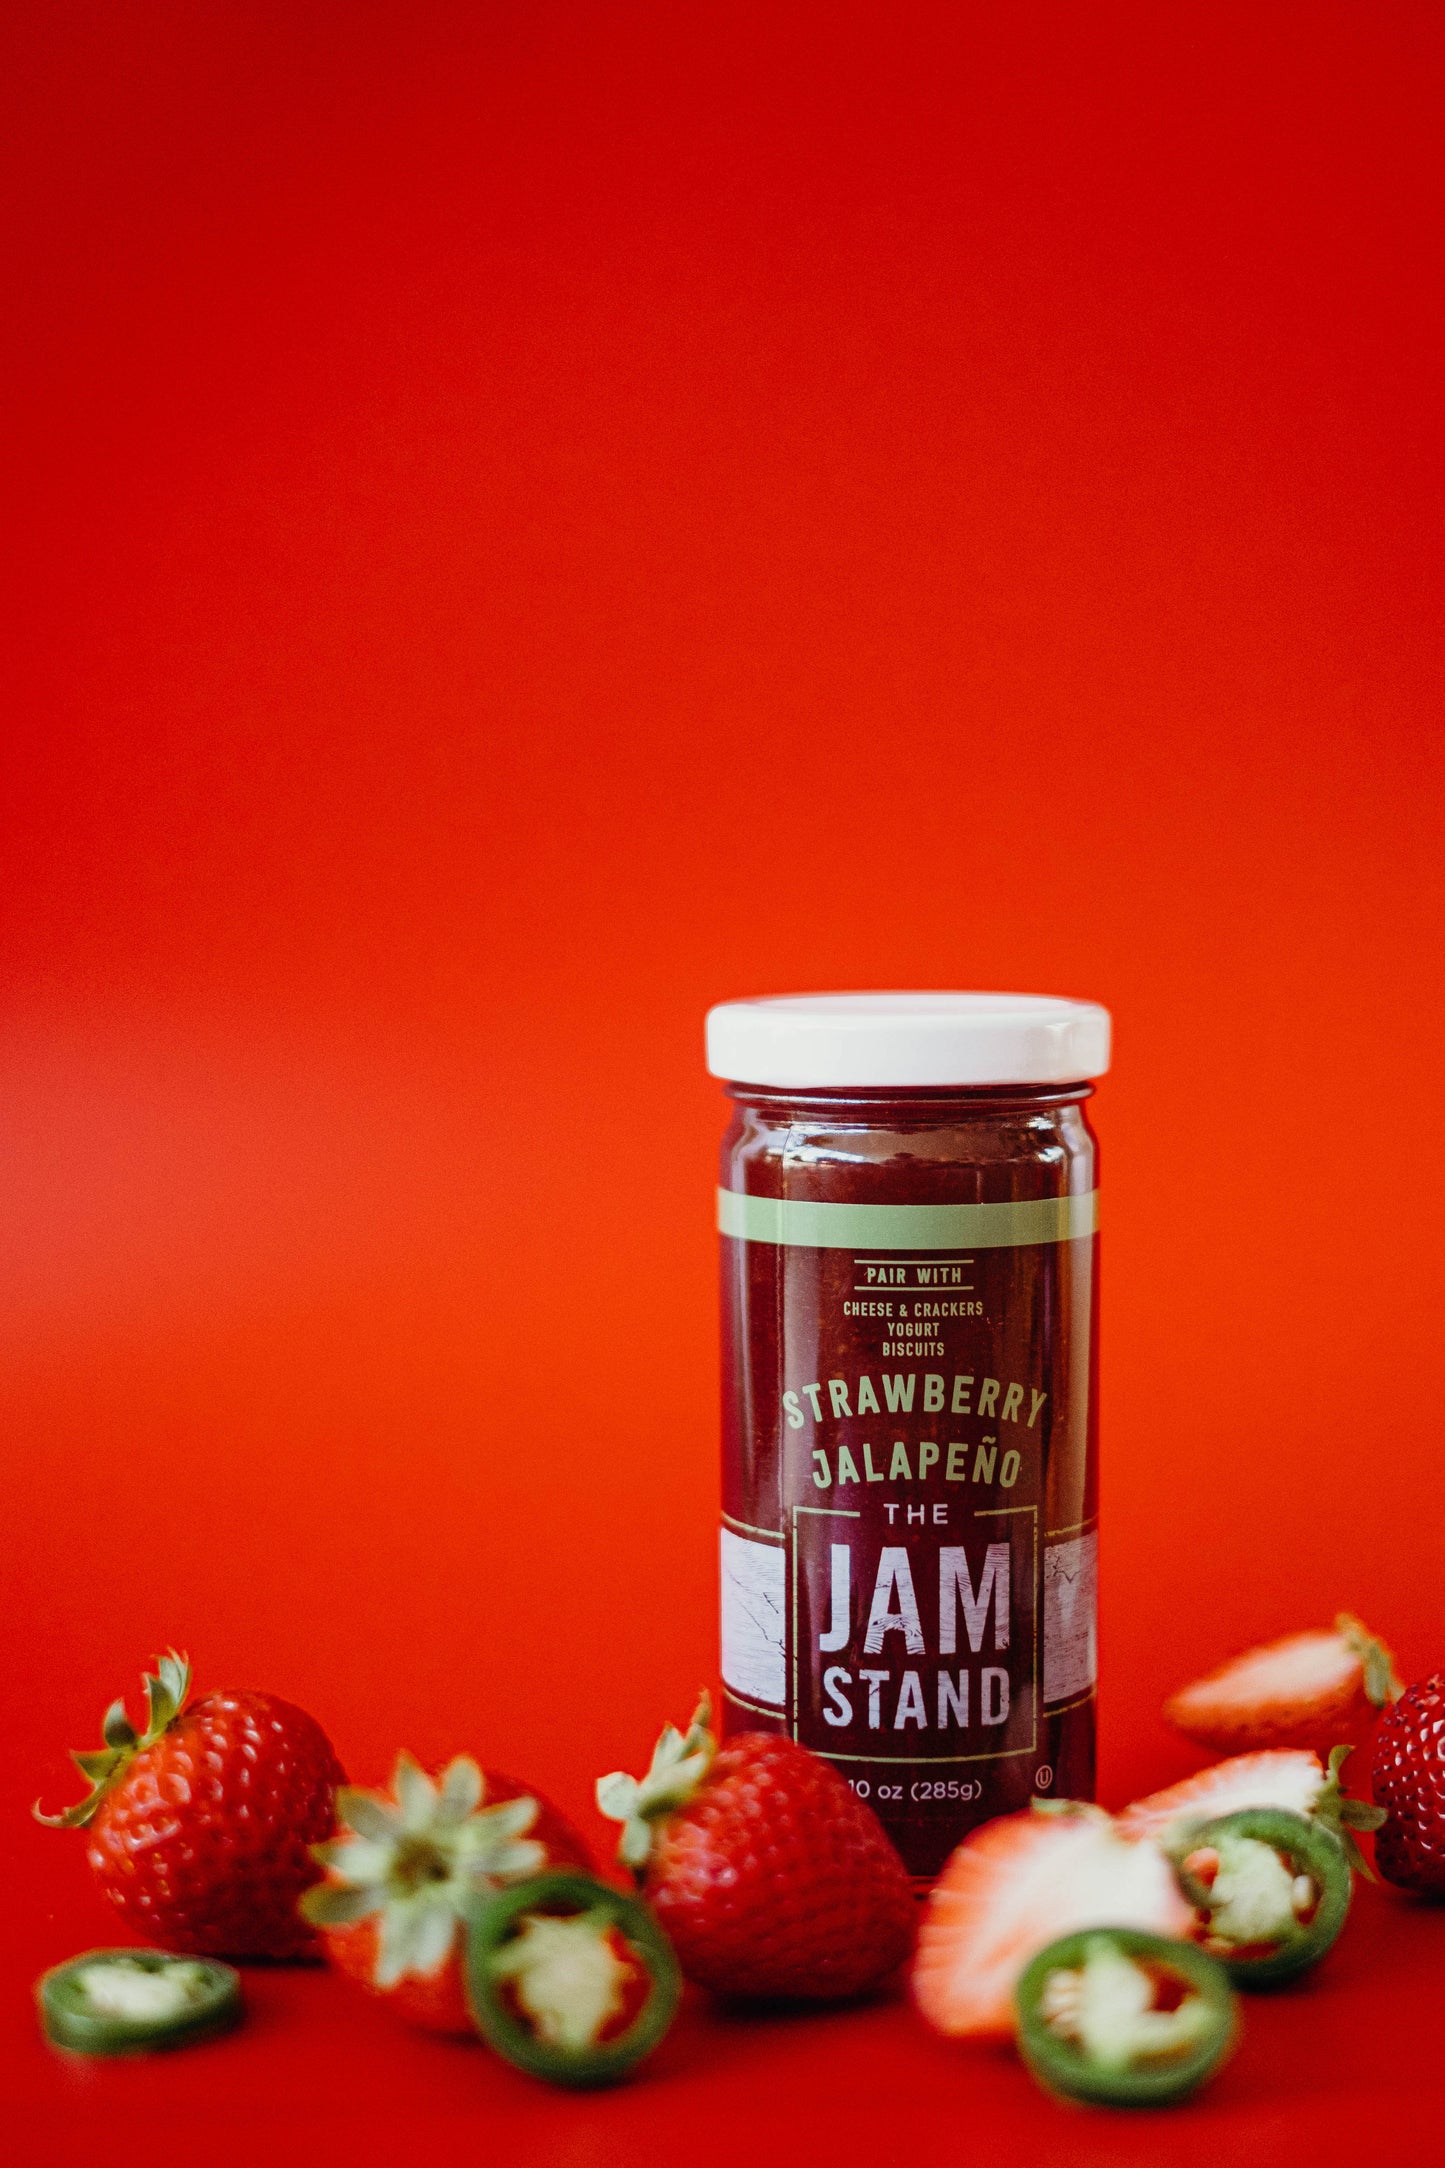 Strawberry Jalapeño Jam bottle